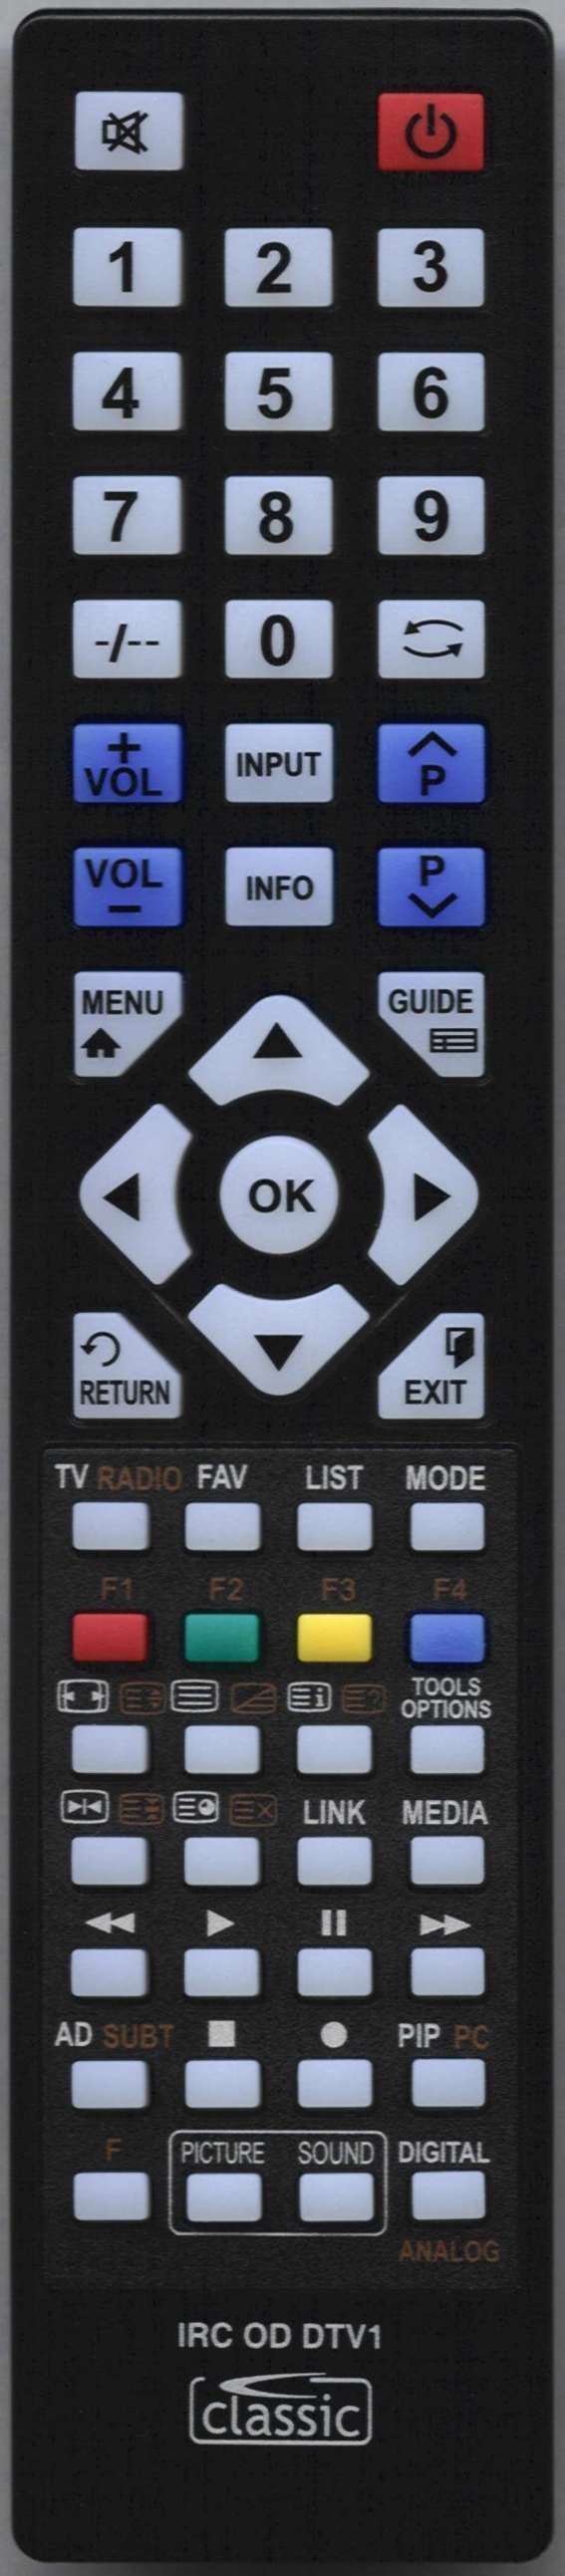 LUXOR LUX0155005/02 Remote Control Alternative